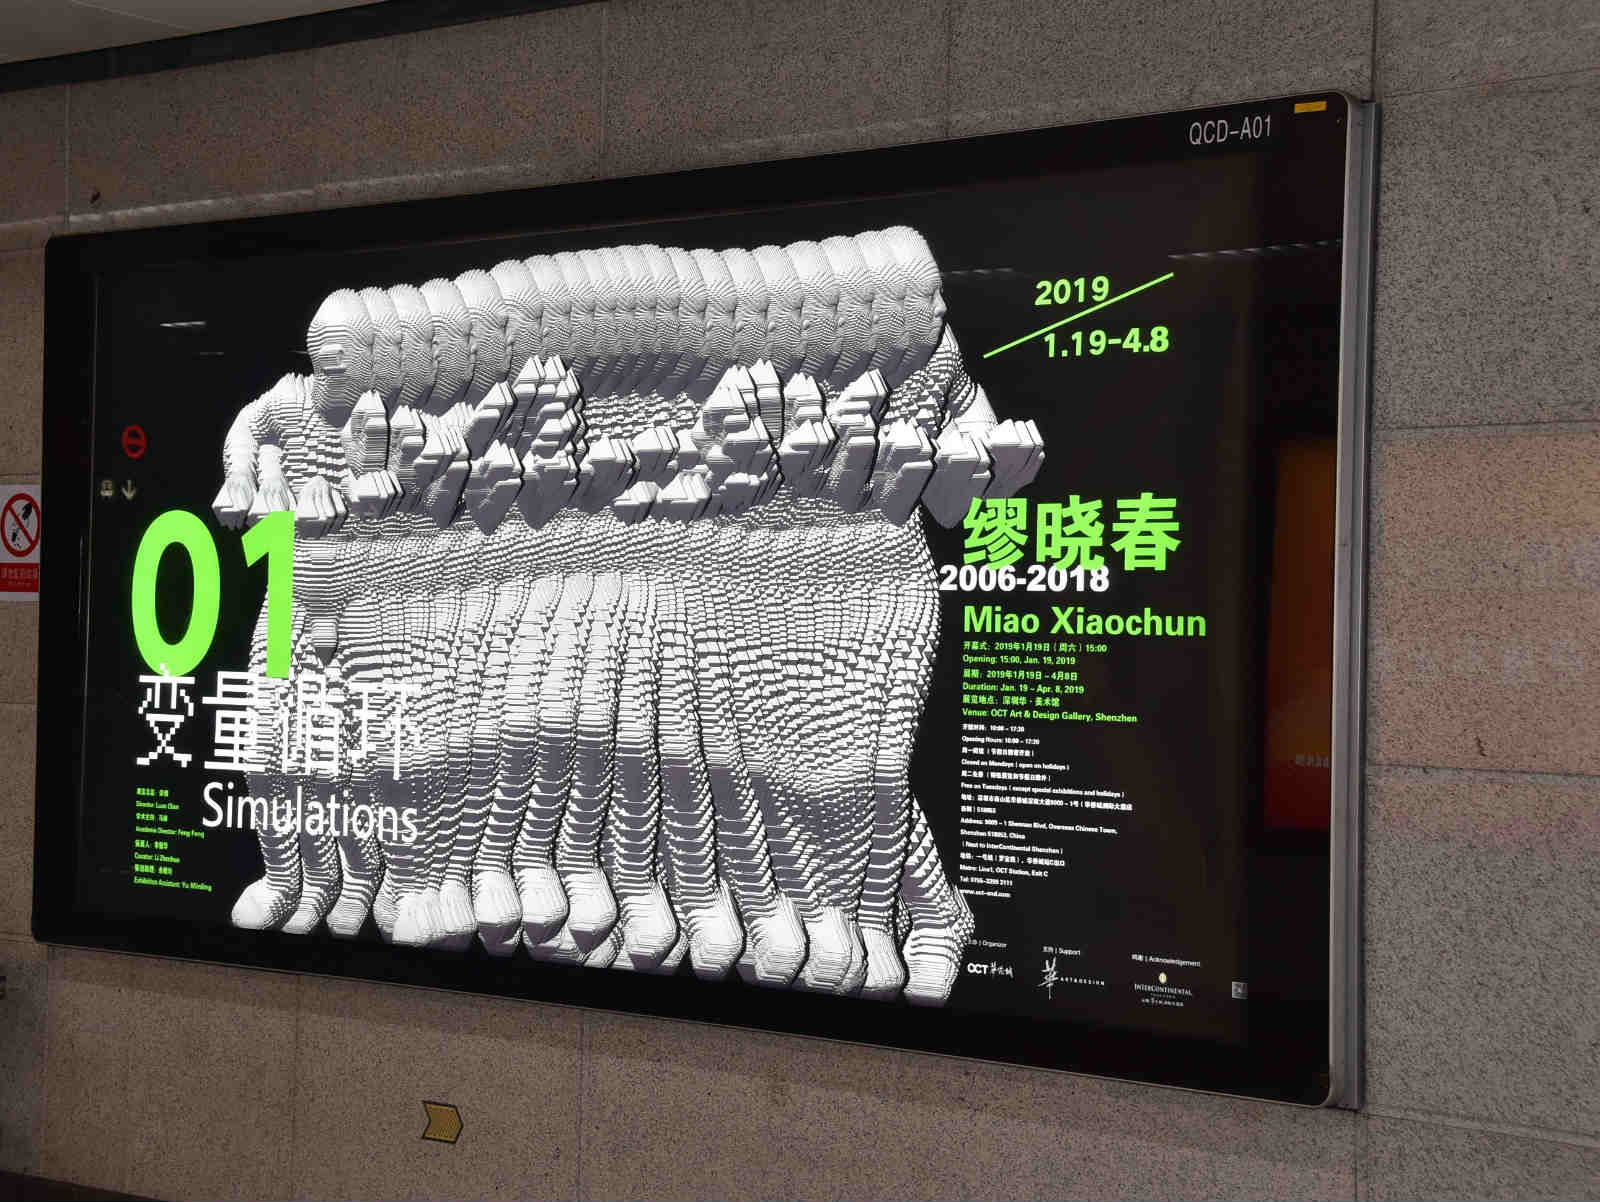 深圳地铁广告有哪些形式